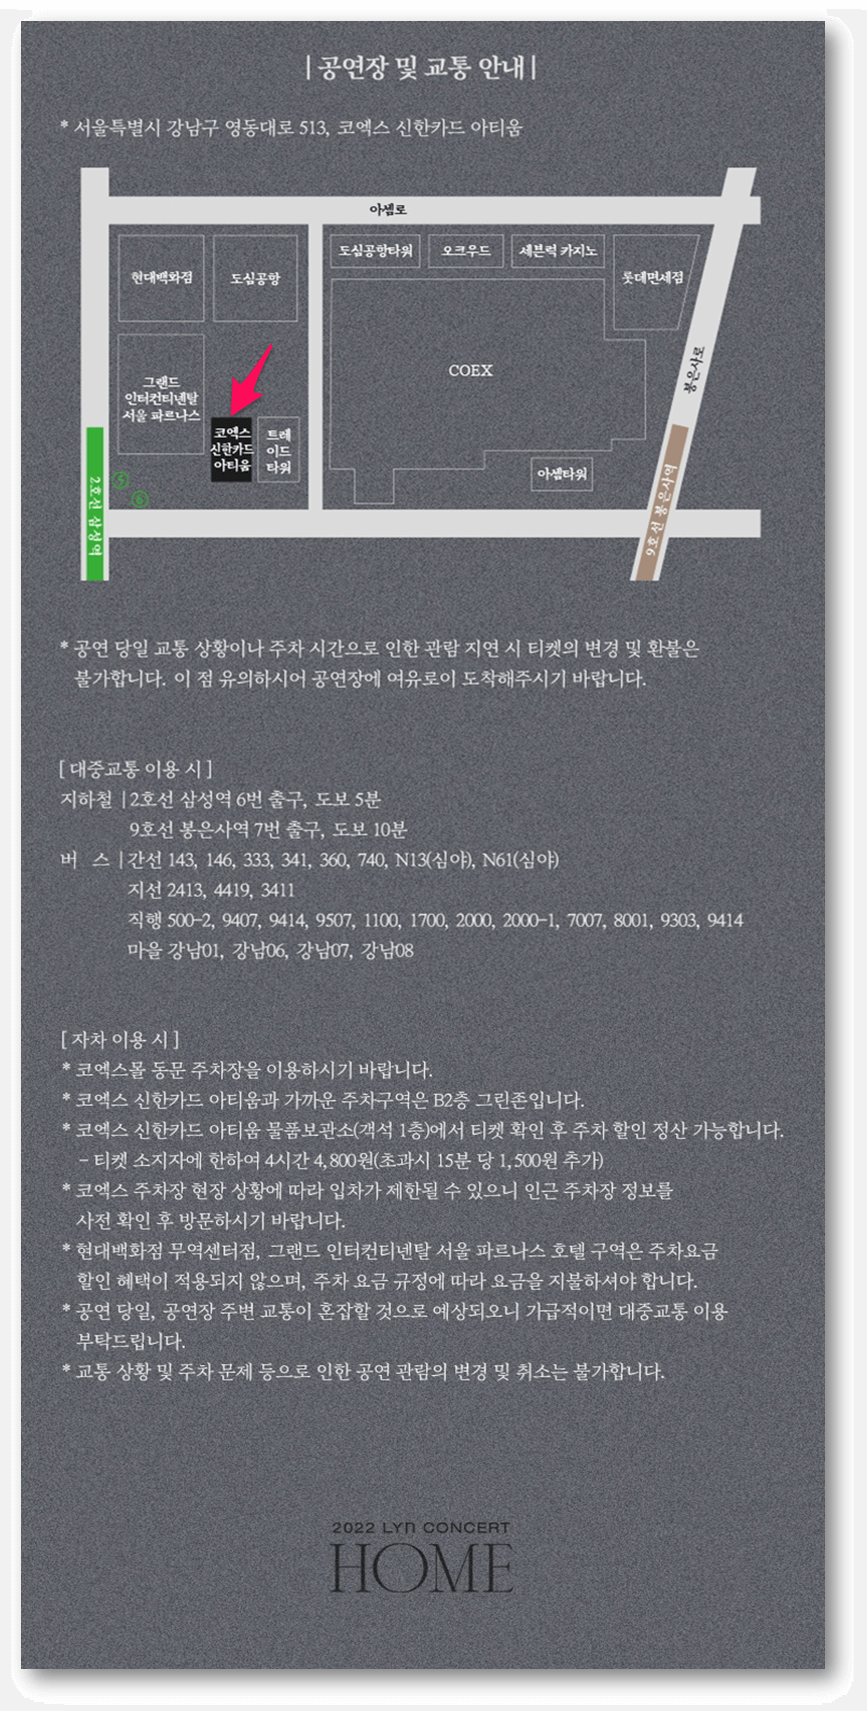 2022 린 HOME 2nd 서울 콘서트 공연장 교통정보